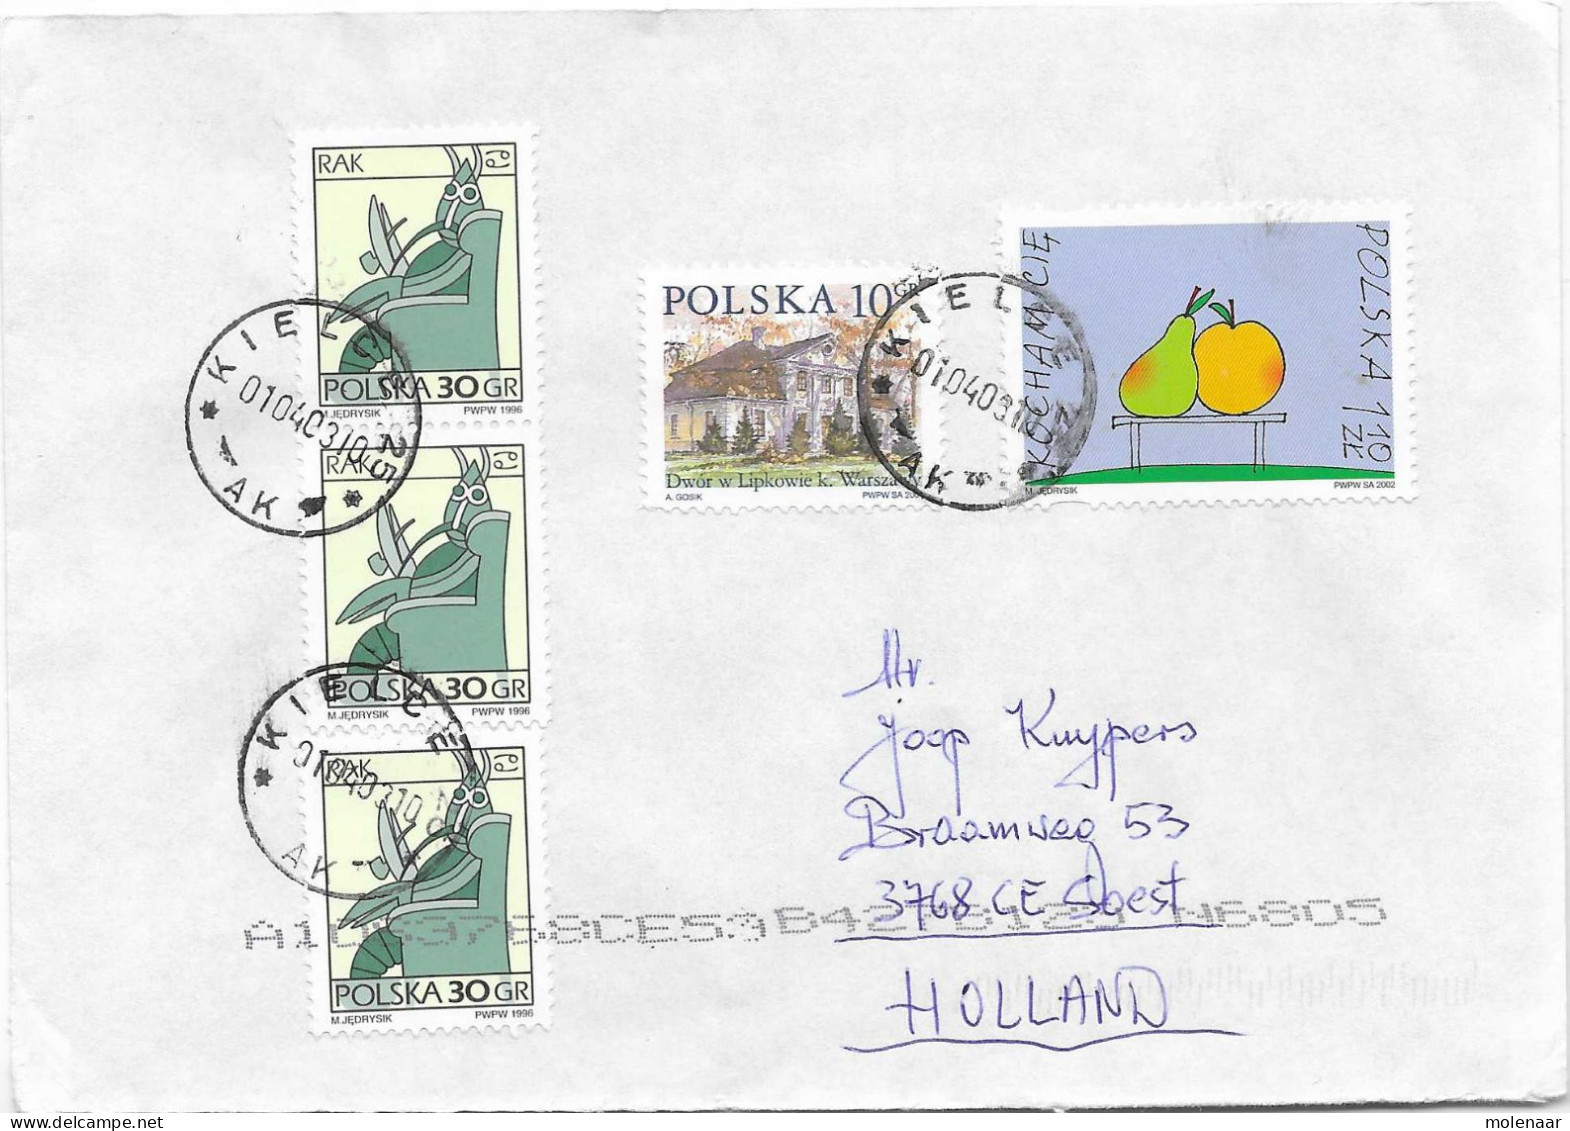 Postzegels > Europa > Polen > 1944-.... Republiek > 2001-10 > Brief Uit 2002 Met 5 Postzegels (17131) - Lettres & Documents